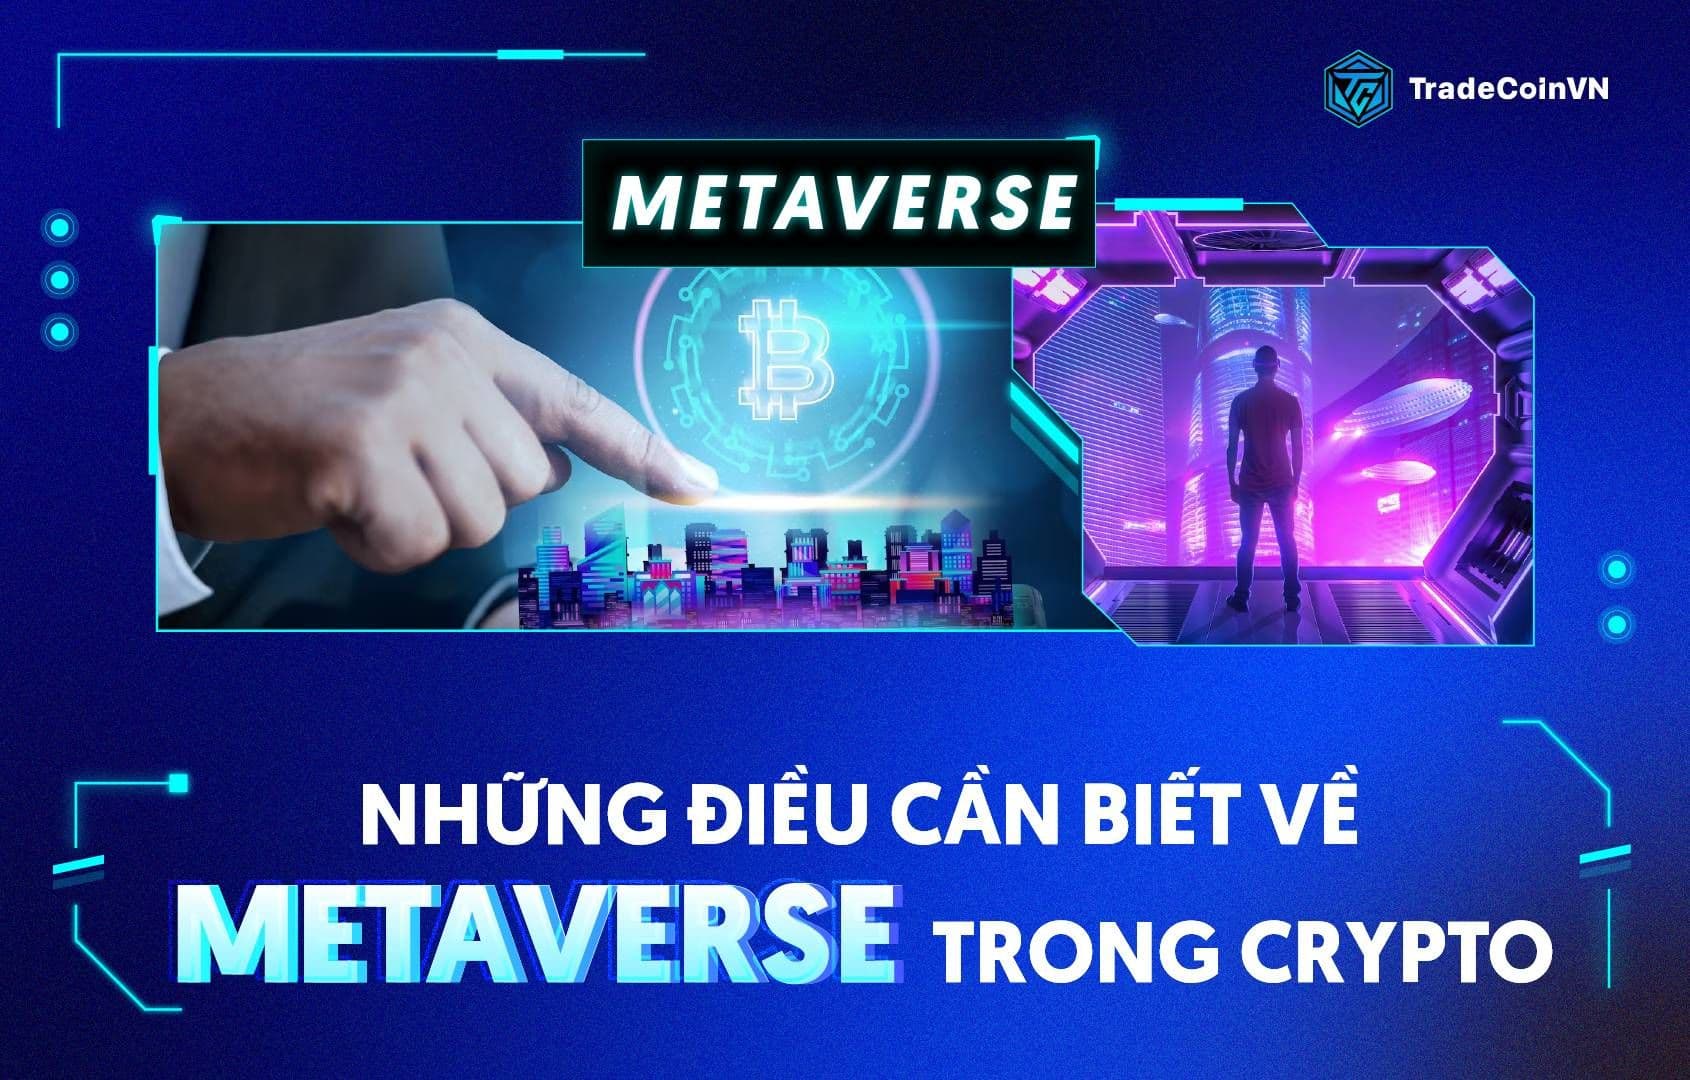 Tổng quan những điều cần biết về Metaverse trong Crypto